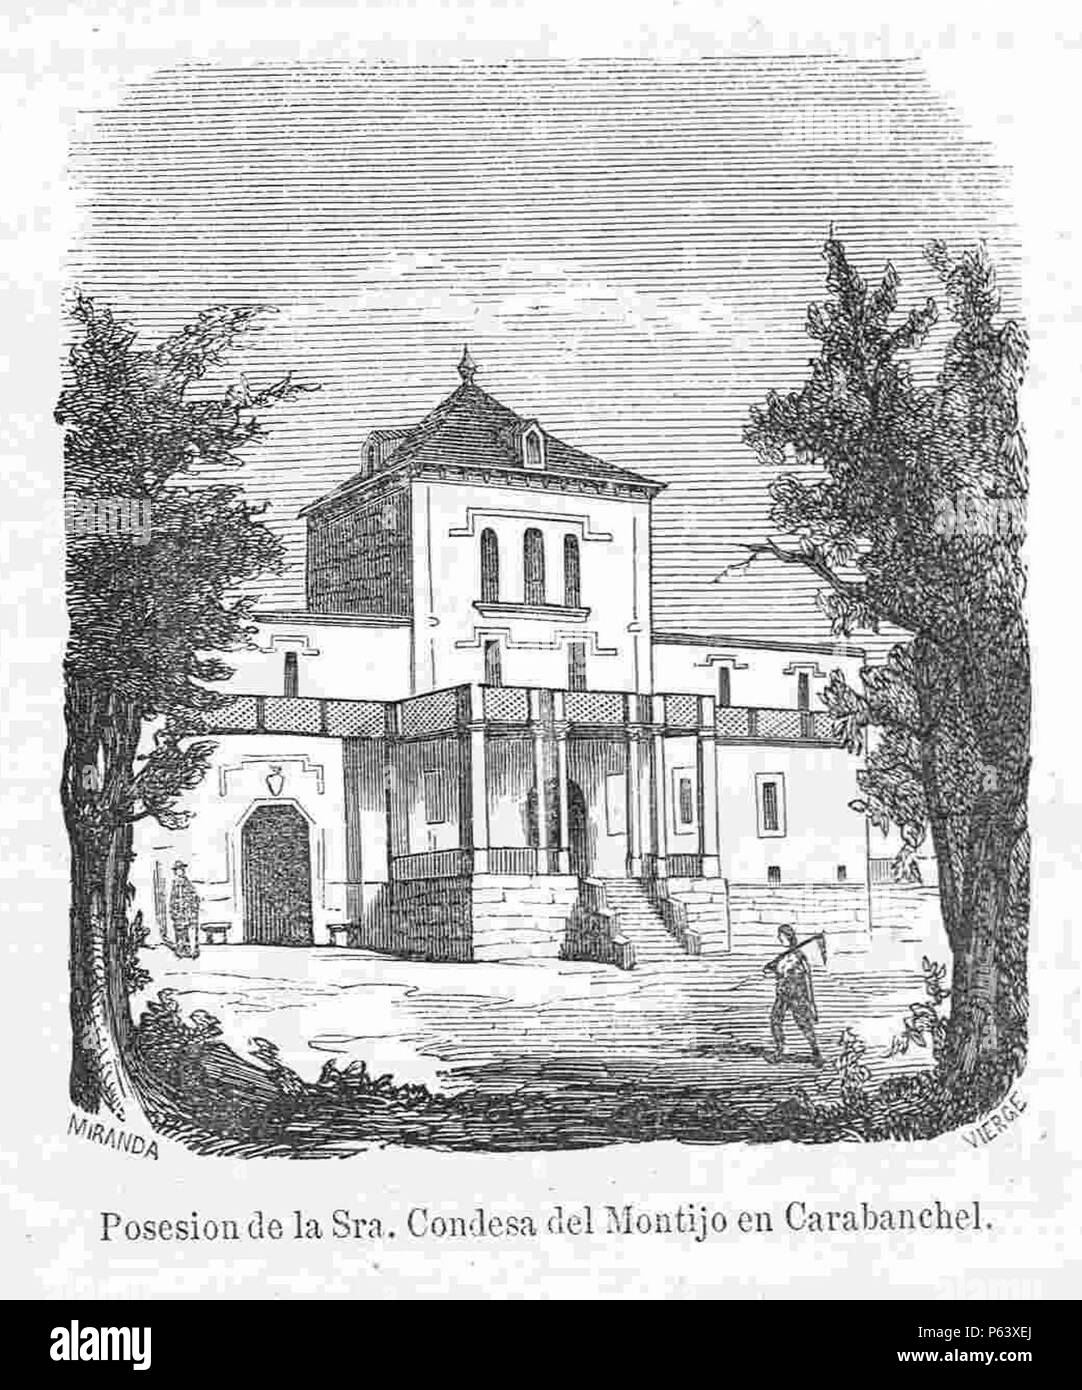 1866, Crónica general de España, Madrid, Posesión de la Condesa de Montijo en Carabanchel. Stock Photo